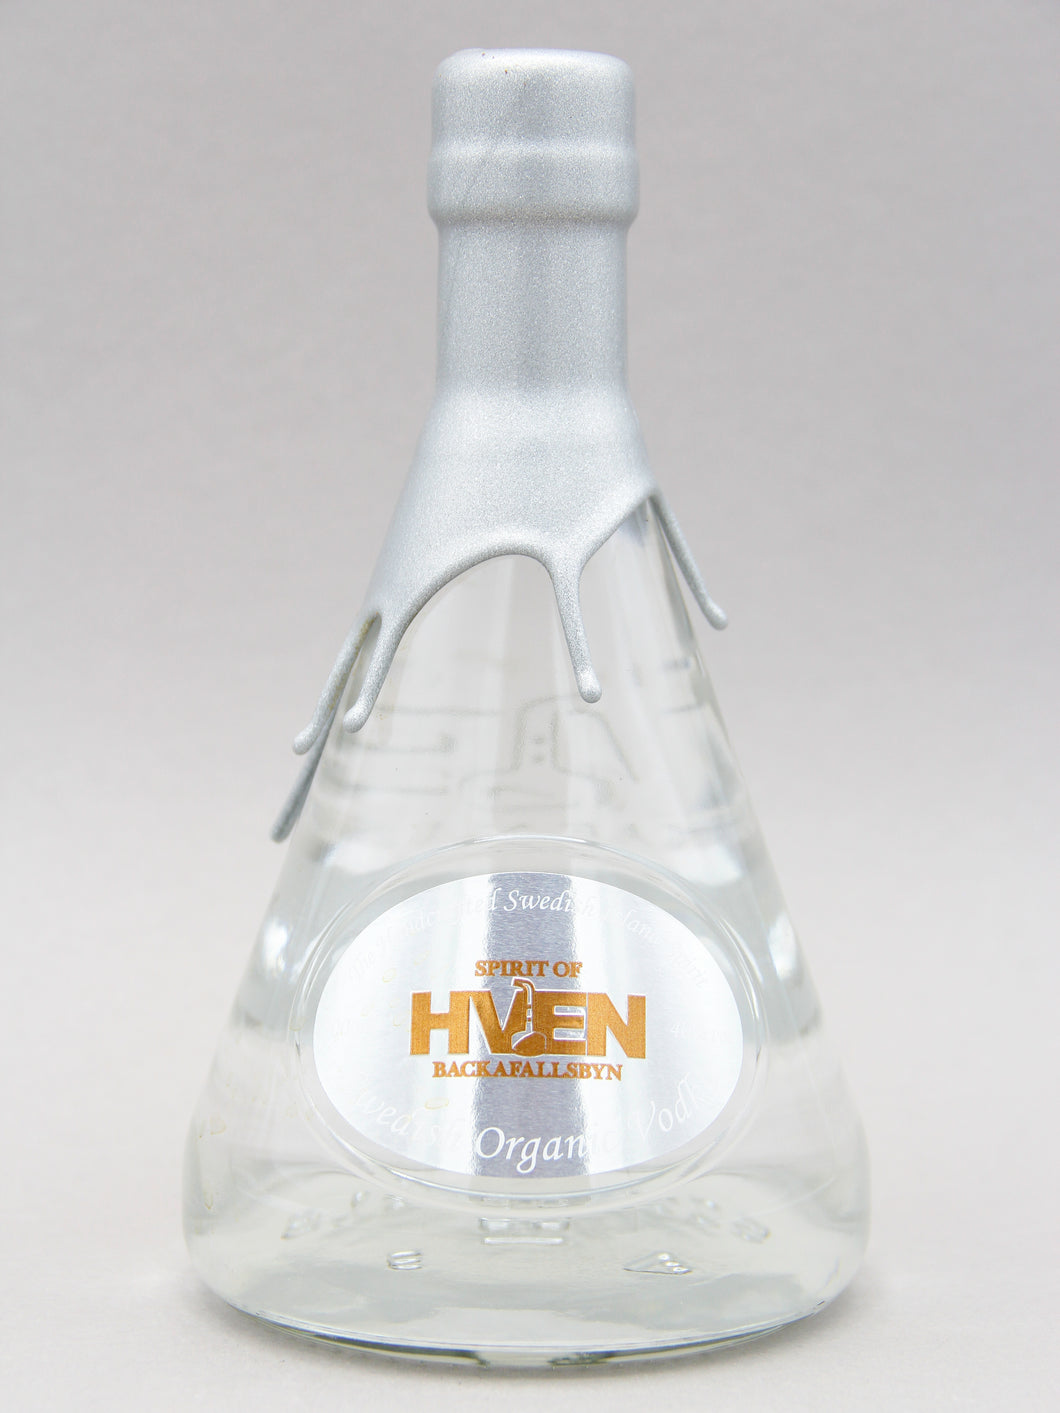 Hven Organic Vodka, Sweden (40%, 50cl)